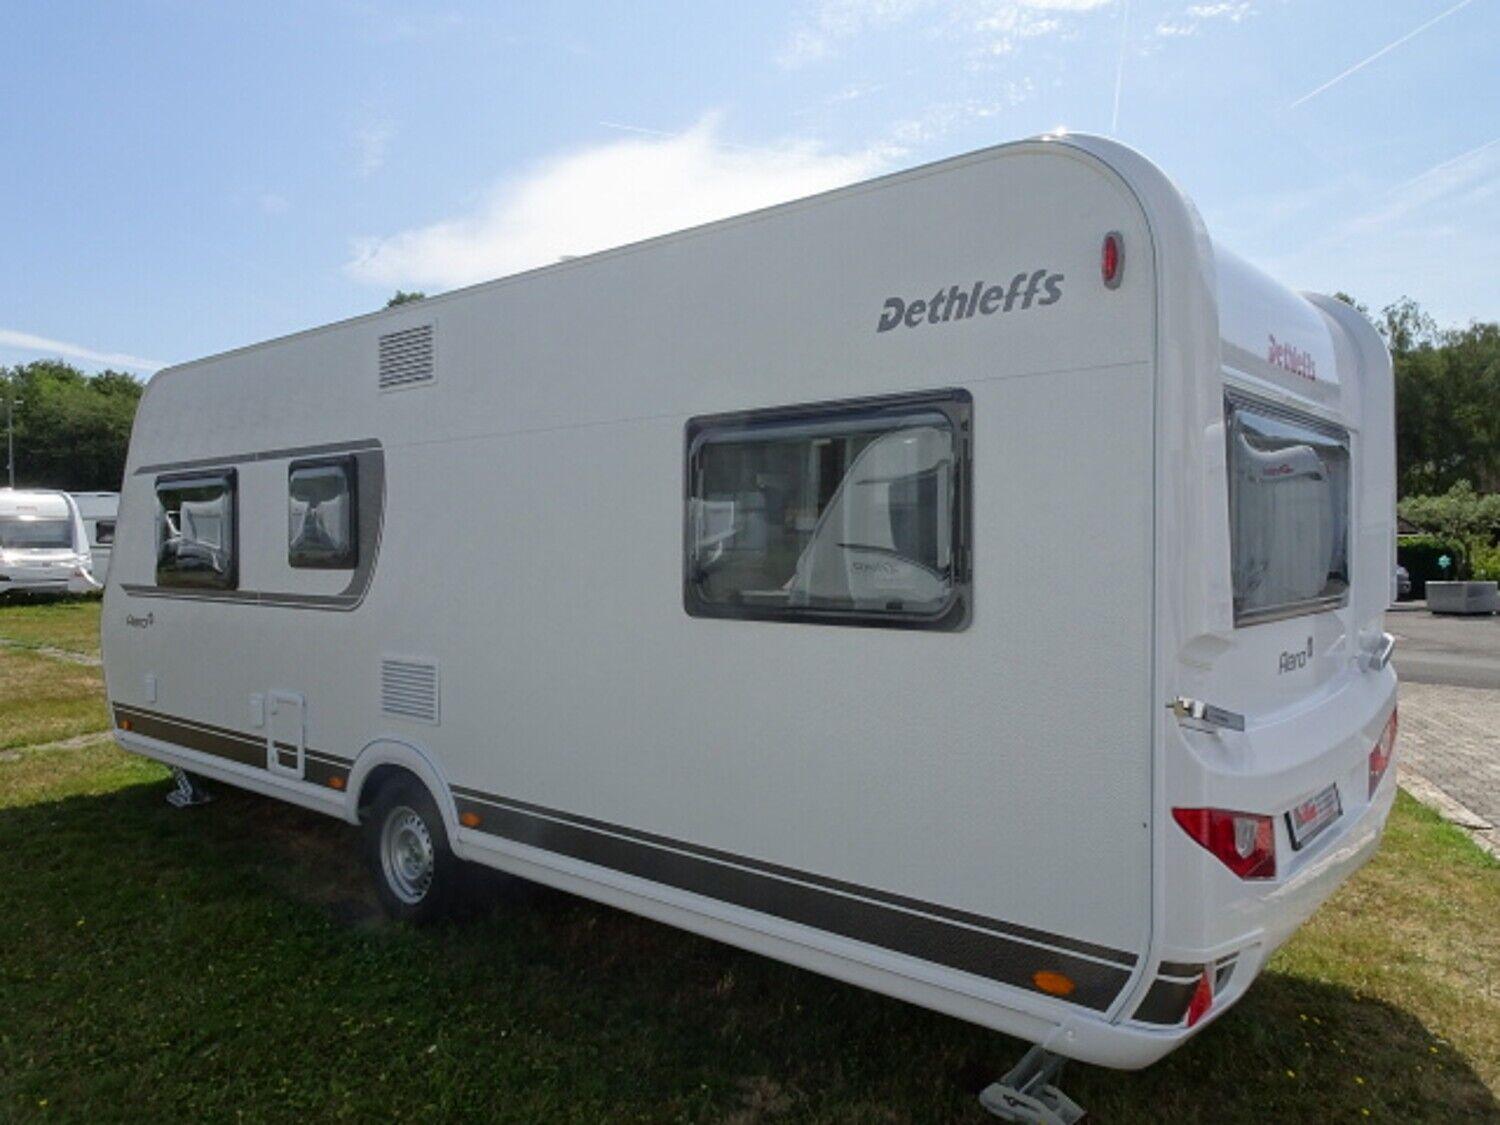 Importex Camping & Caravan - Sicherungskasten mit Umformer (230V und 12V  Versorgung) in einem Dethleffs 530TK Wohnwagen #dethleffs